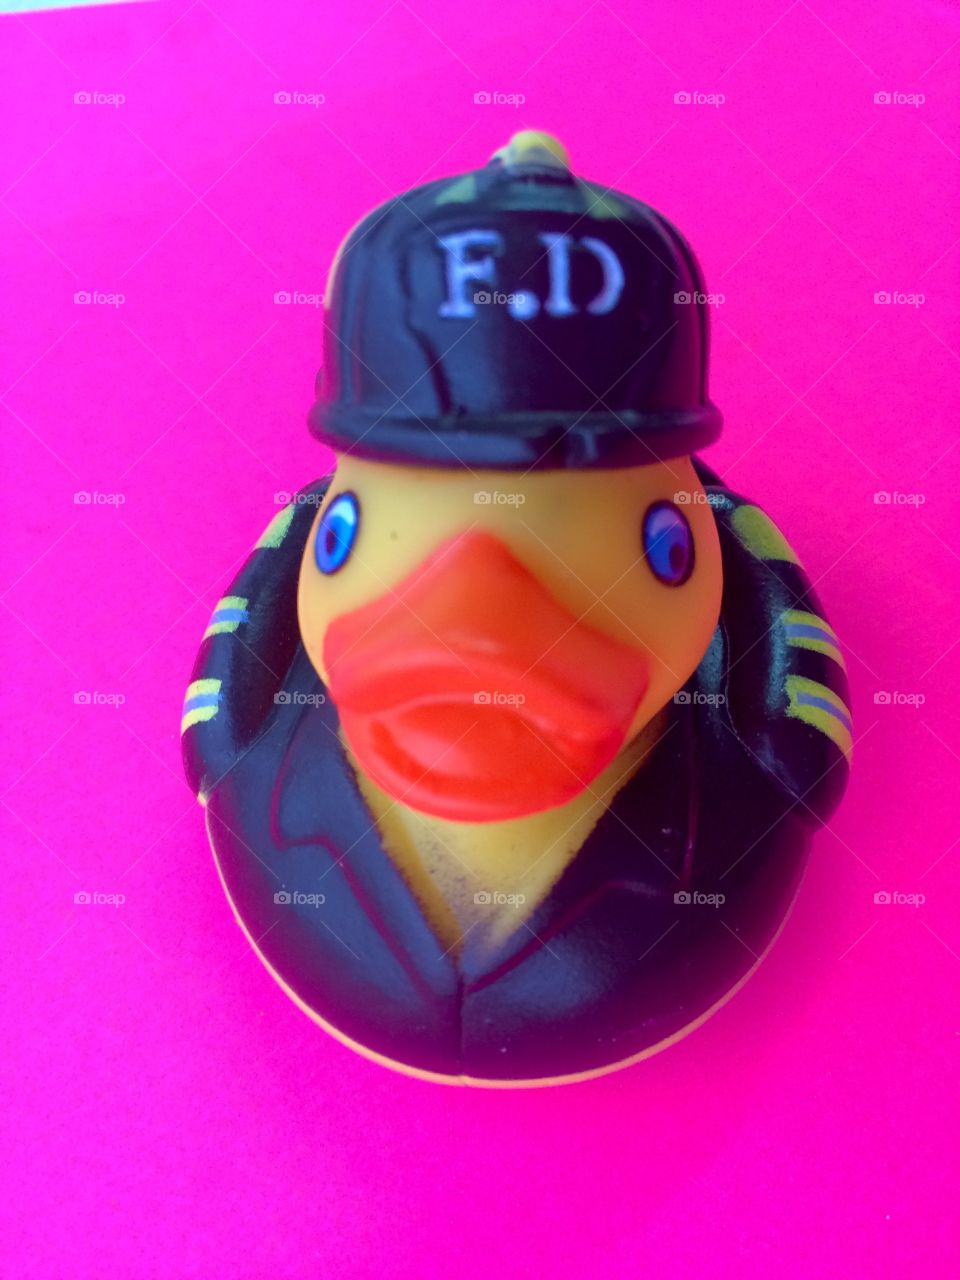 Firefighter rubber duck 